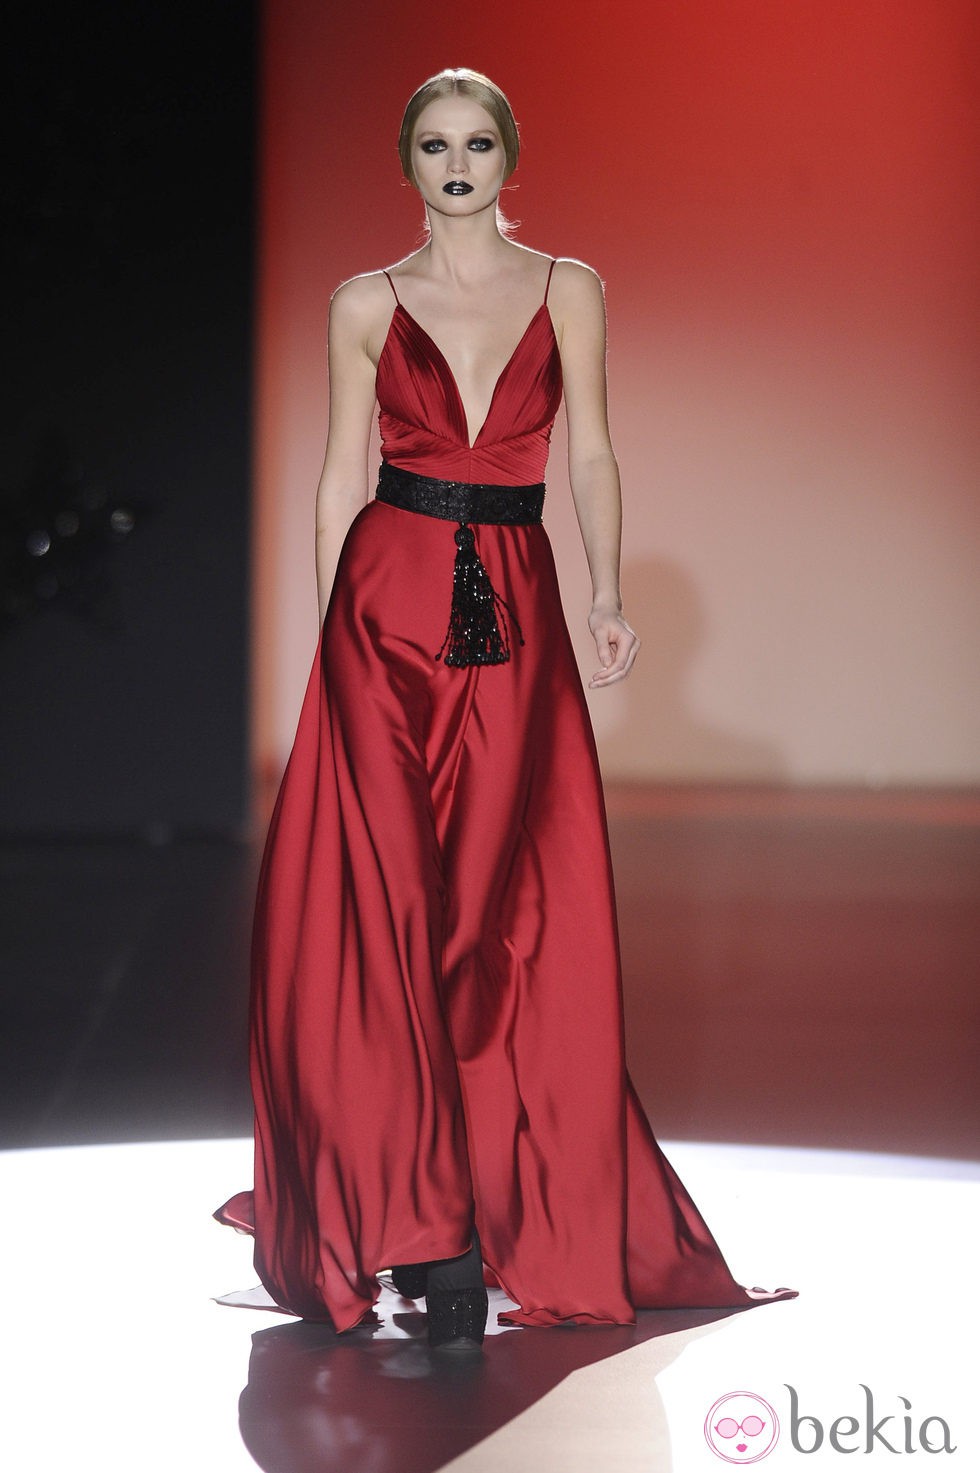 Vestido rojo de la colección otoño/invierno 2013/2014 de Hannibal Laguna en la Madrid Fashion Week